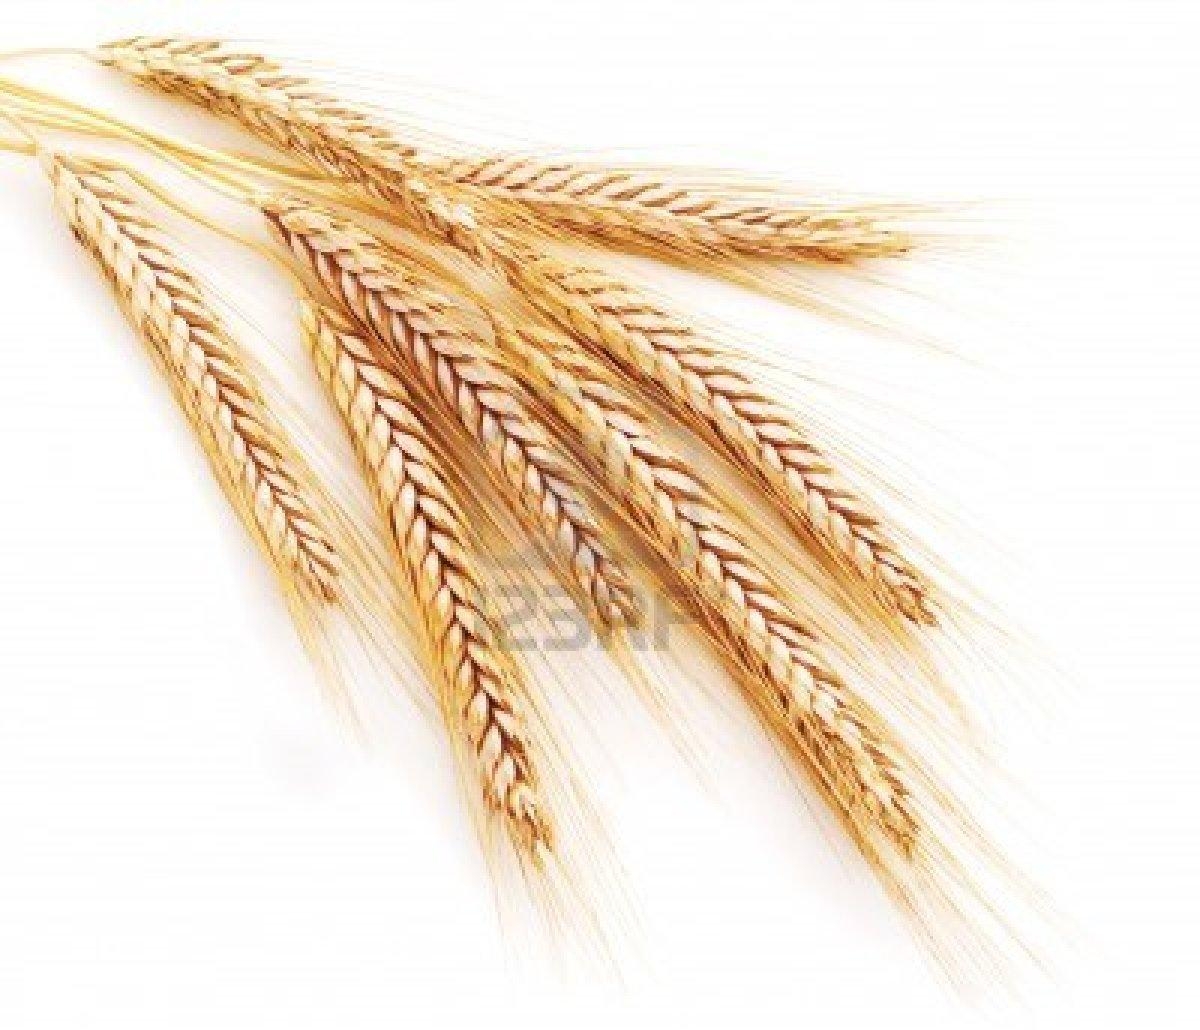 структура пшеницы польской